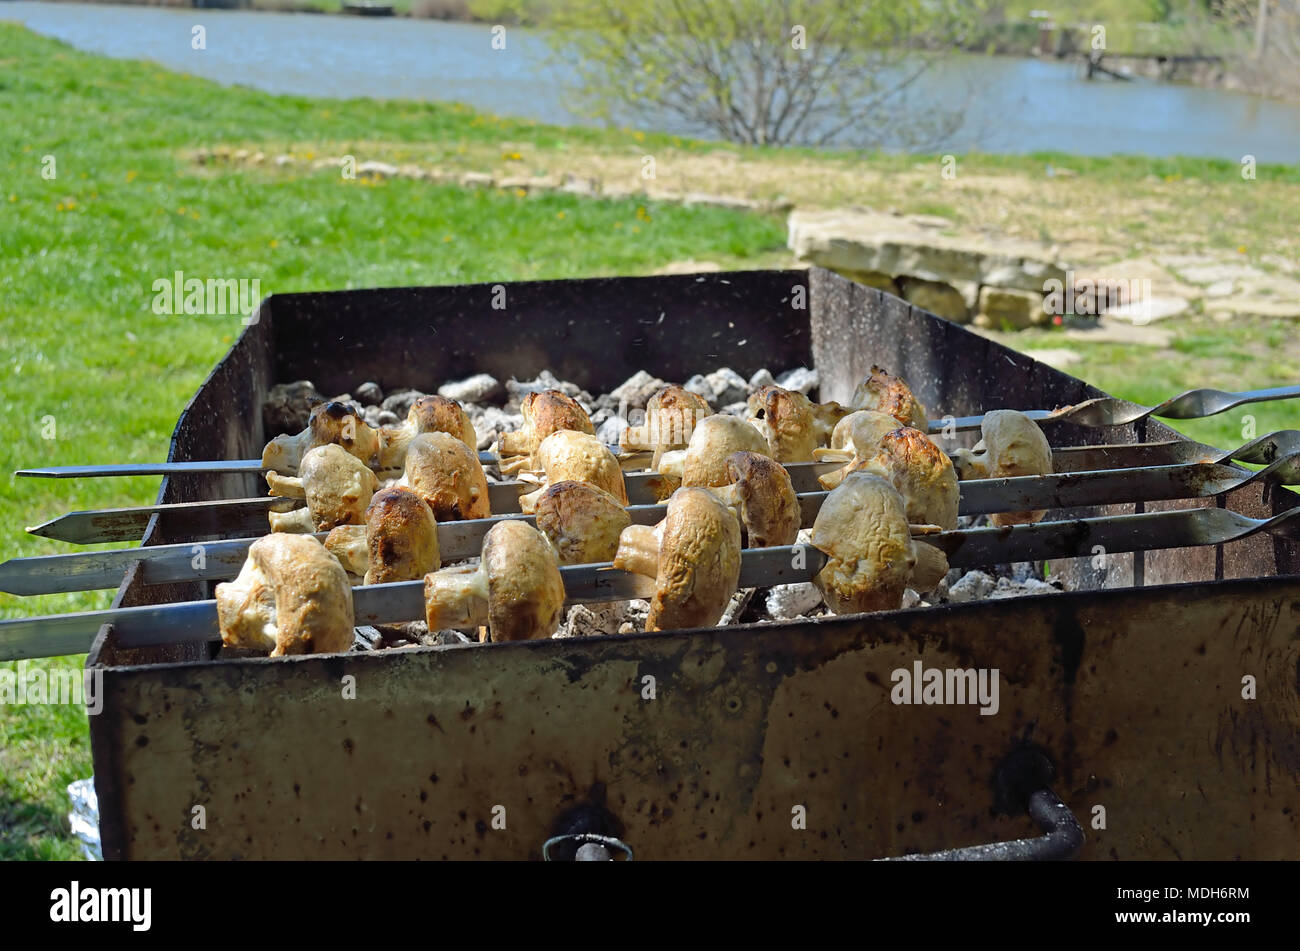 Champignons marinés préparation sur un barbecue sur charbon de bois. champignons ou shish kebab populaires en Europe de l'Est. Shashlyk (brochette de viande) a été Banque D'Images